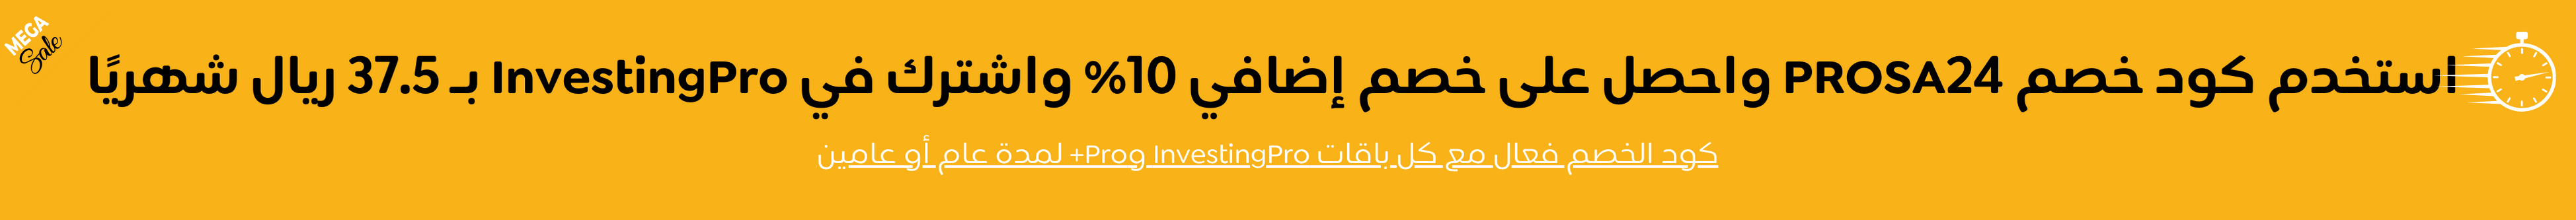 اشتراك InvestingPro